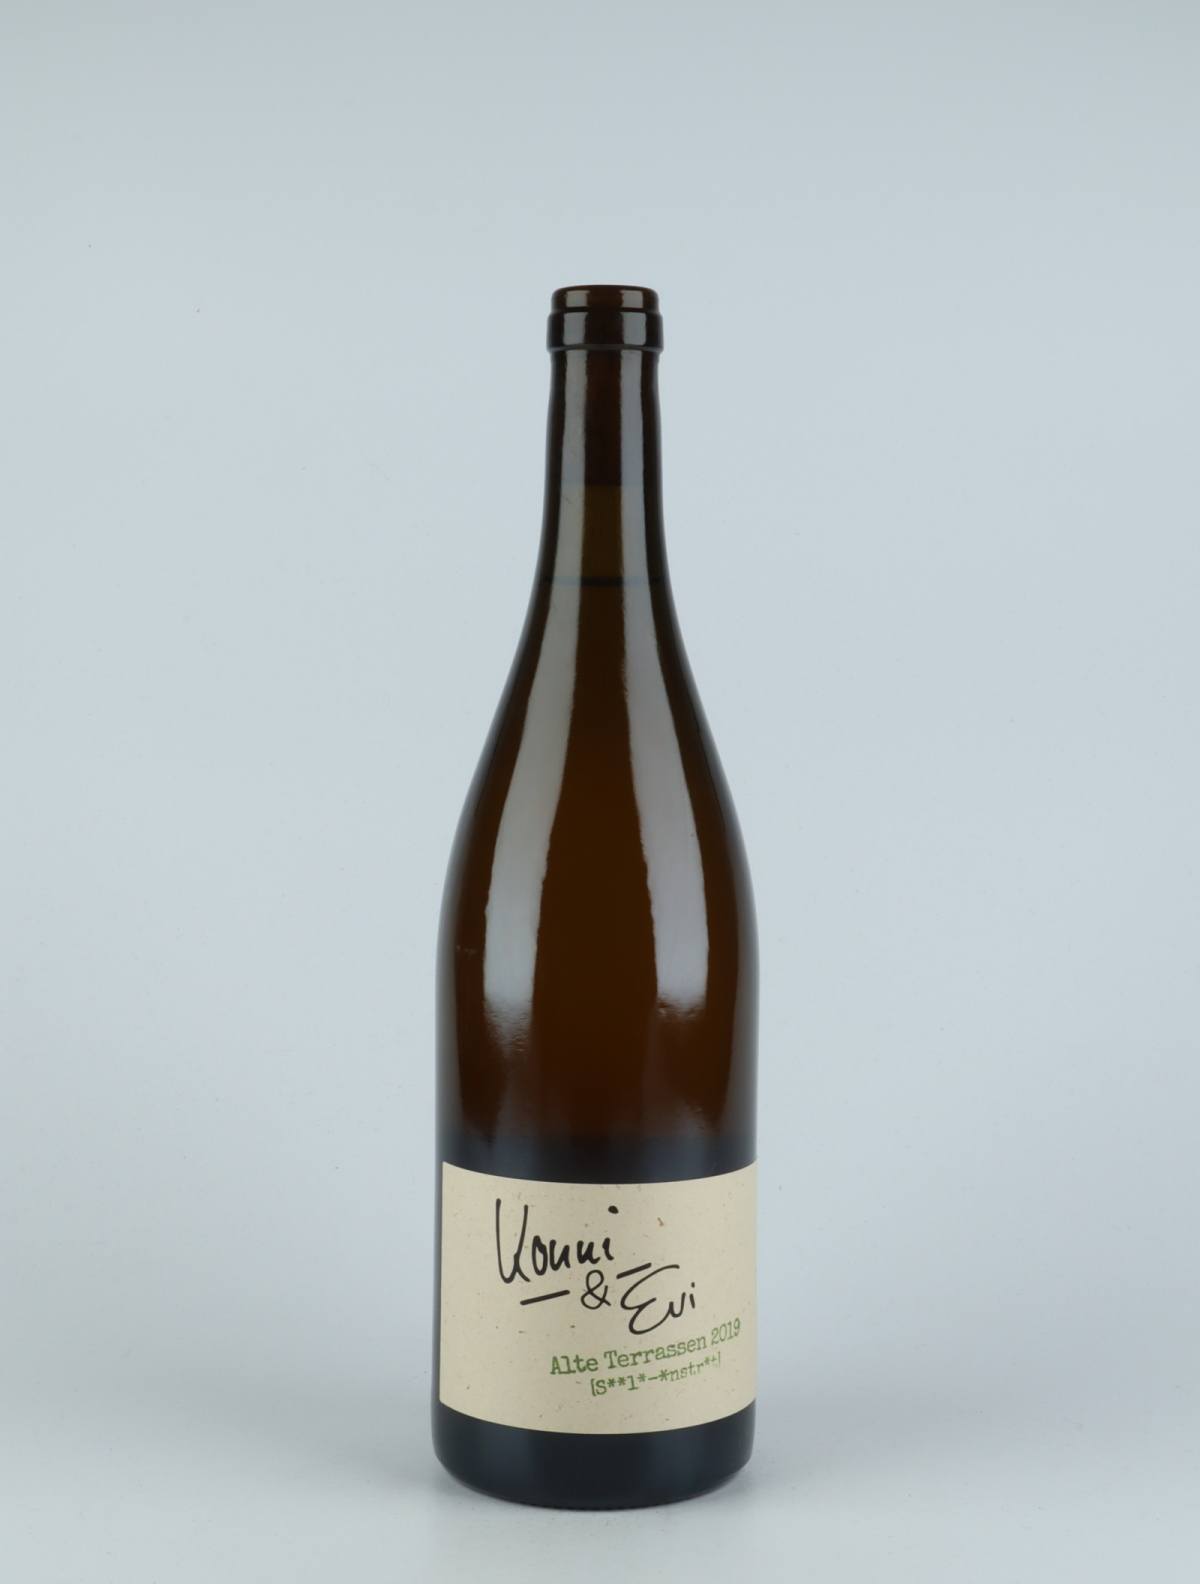 A bottle 2019 Alte Terrassen White wine from Konni & Evi, Saale-Unstrut in Germany